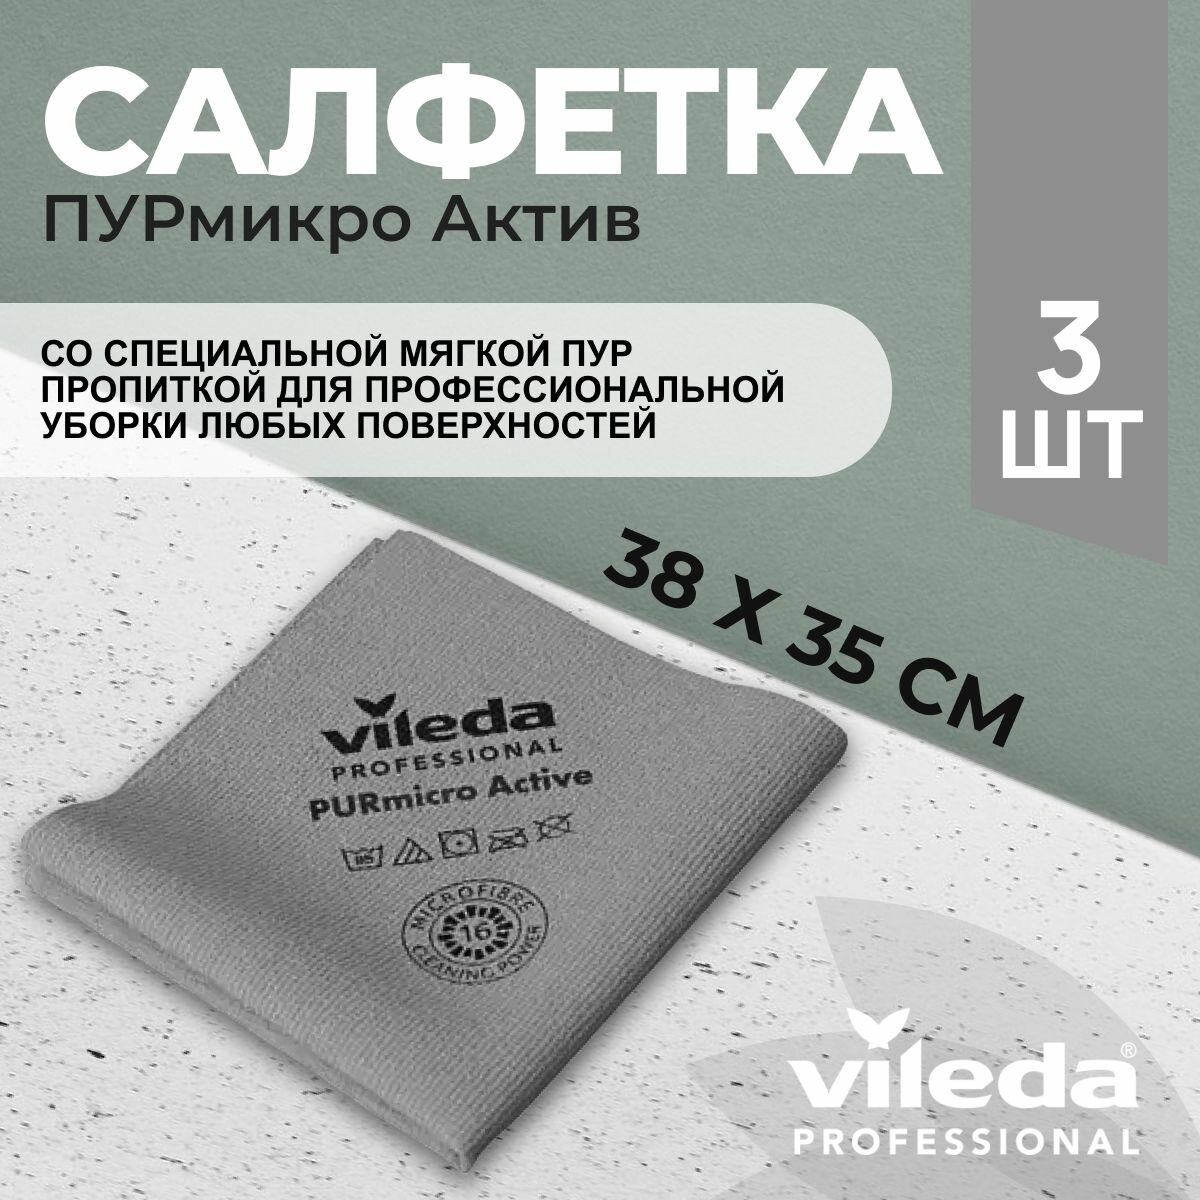 Салфетки профессиональные для уборки из микроволокна Vileda ПУРмикро Актив PURmicro Active 38х35 см, серый, 3 шт.